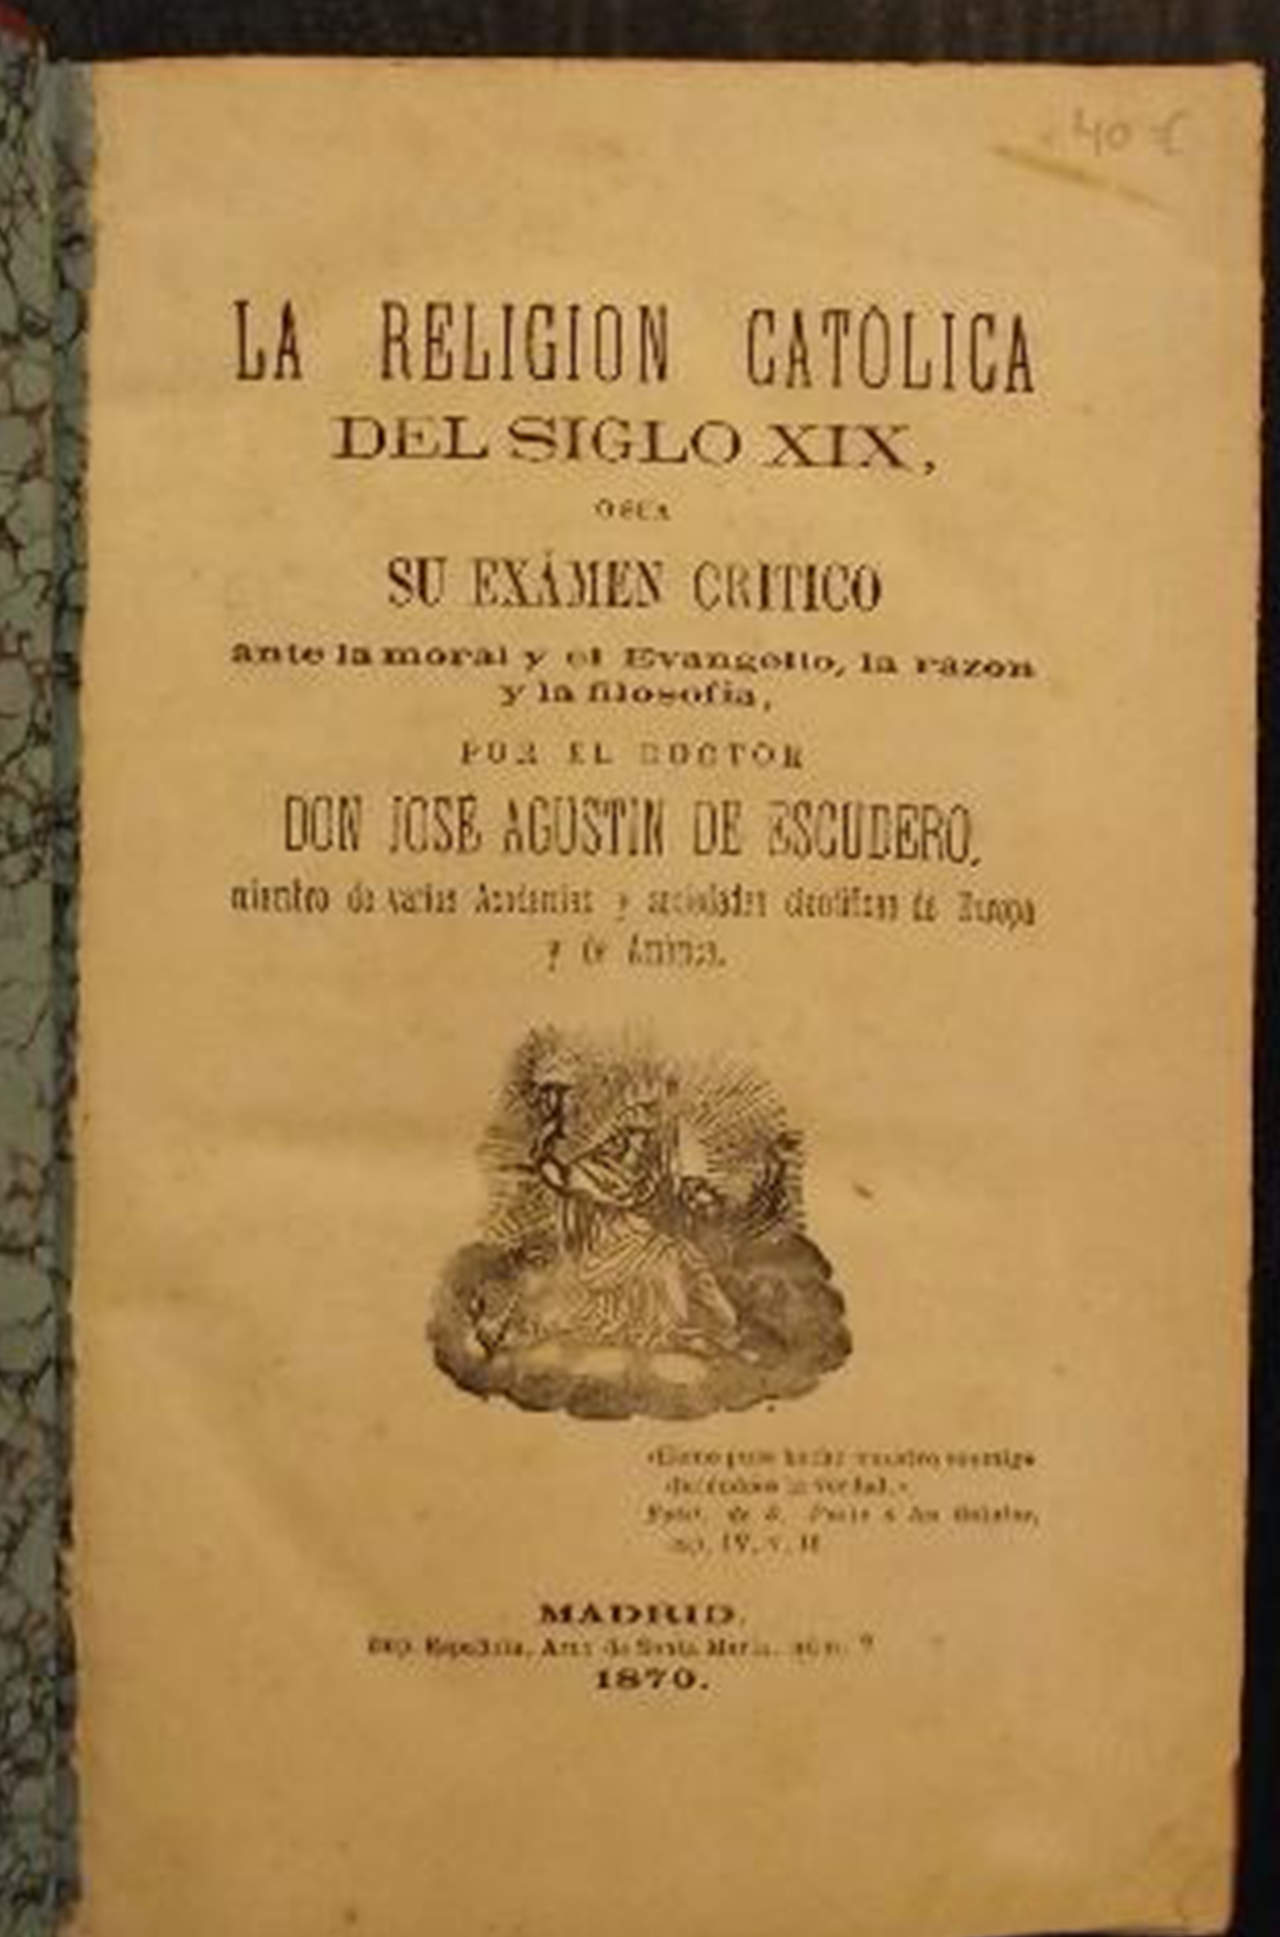 La religión católica en el siglo XIX de Agustín de Escudero, 1870.

